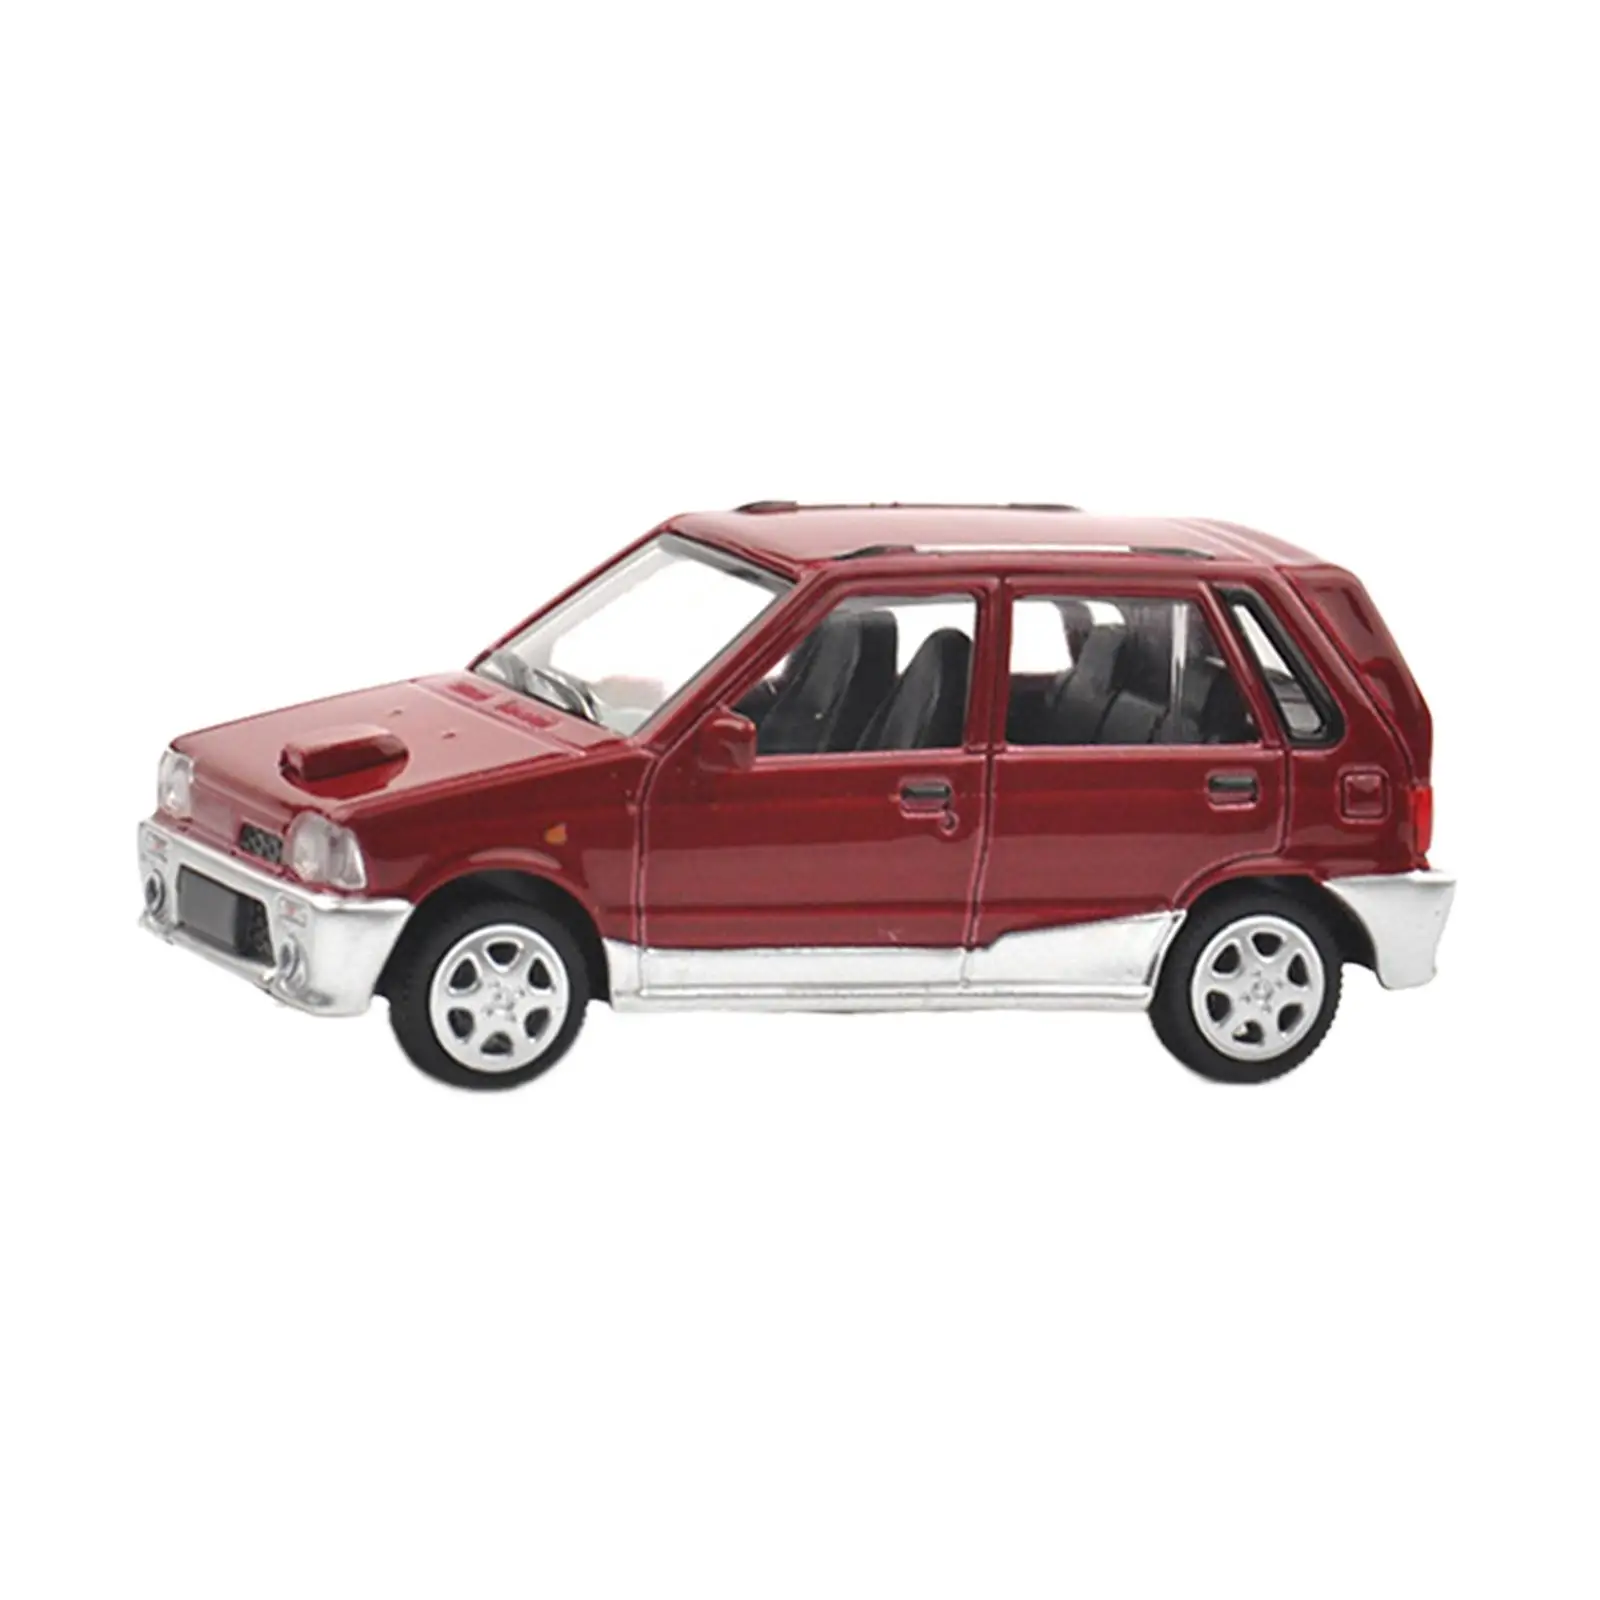 

1/64 Миниатюрная модель автомобиля, игрушки, миниатюрные автомобили, коллекционные игрушки, диотома, сцены для миниатюрной сцены